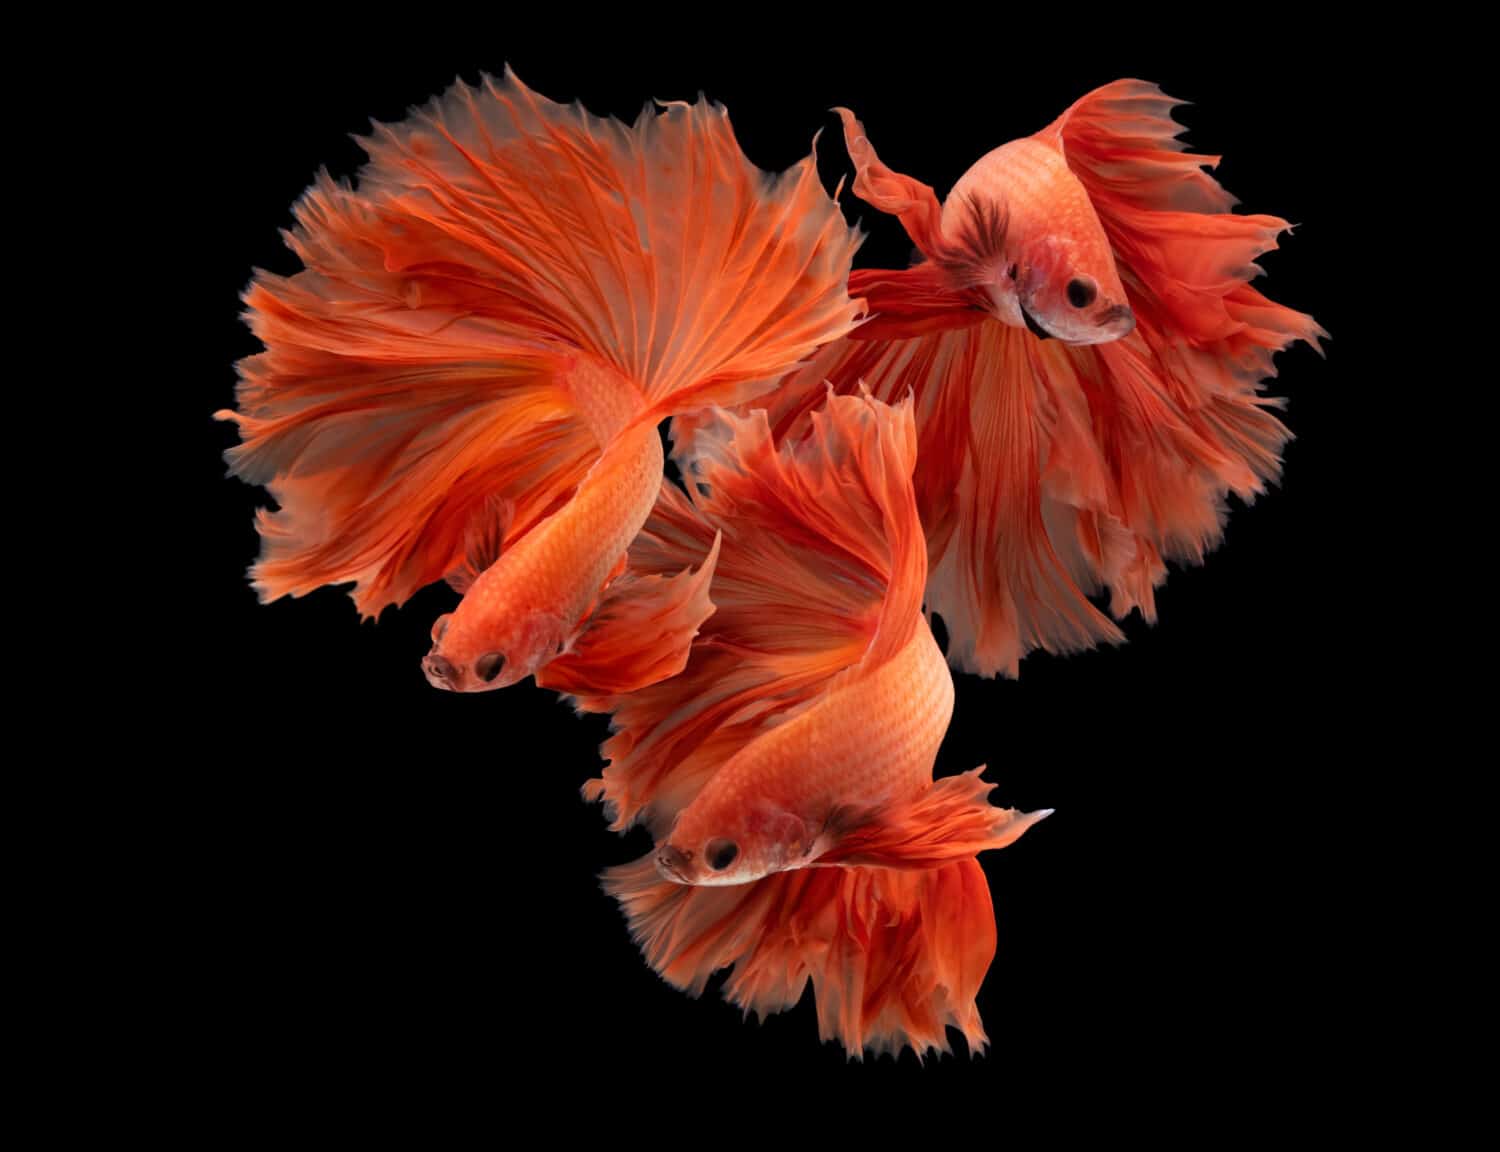 Pesce combattente siamese multicolore (Rosetail) (mezzaluna), pesce combattente, Betta splendens, sullo sfondo della natura